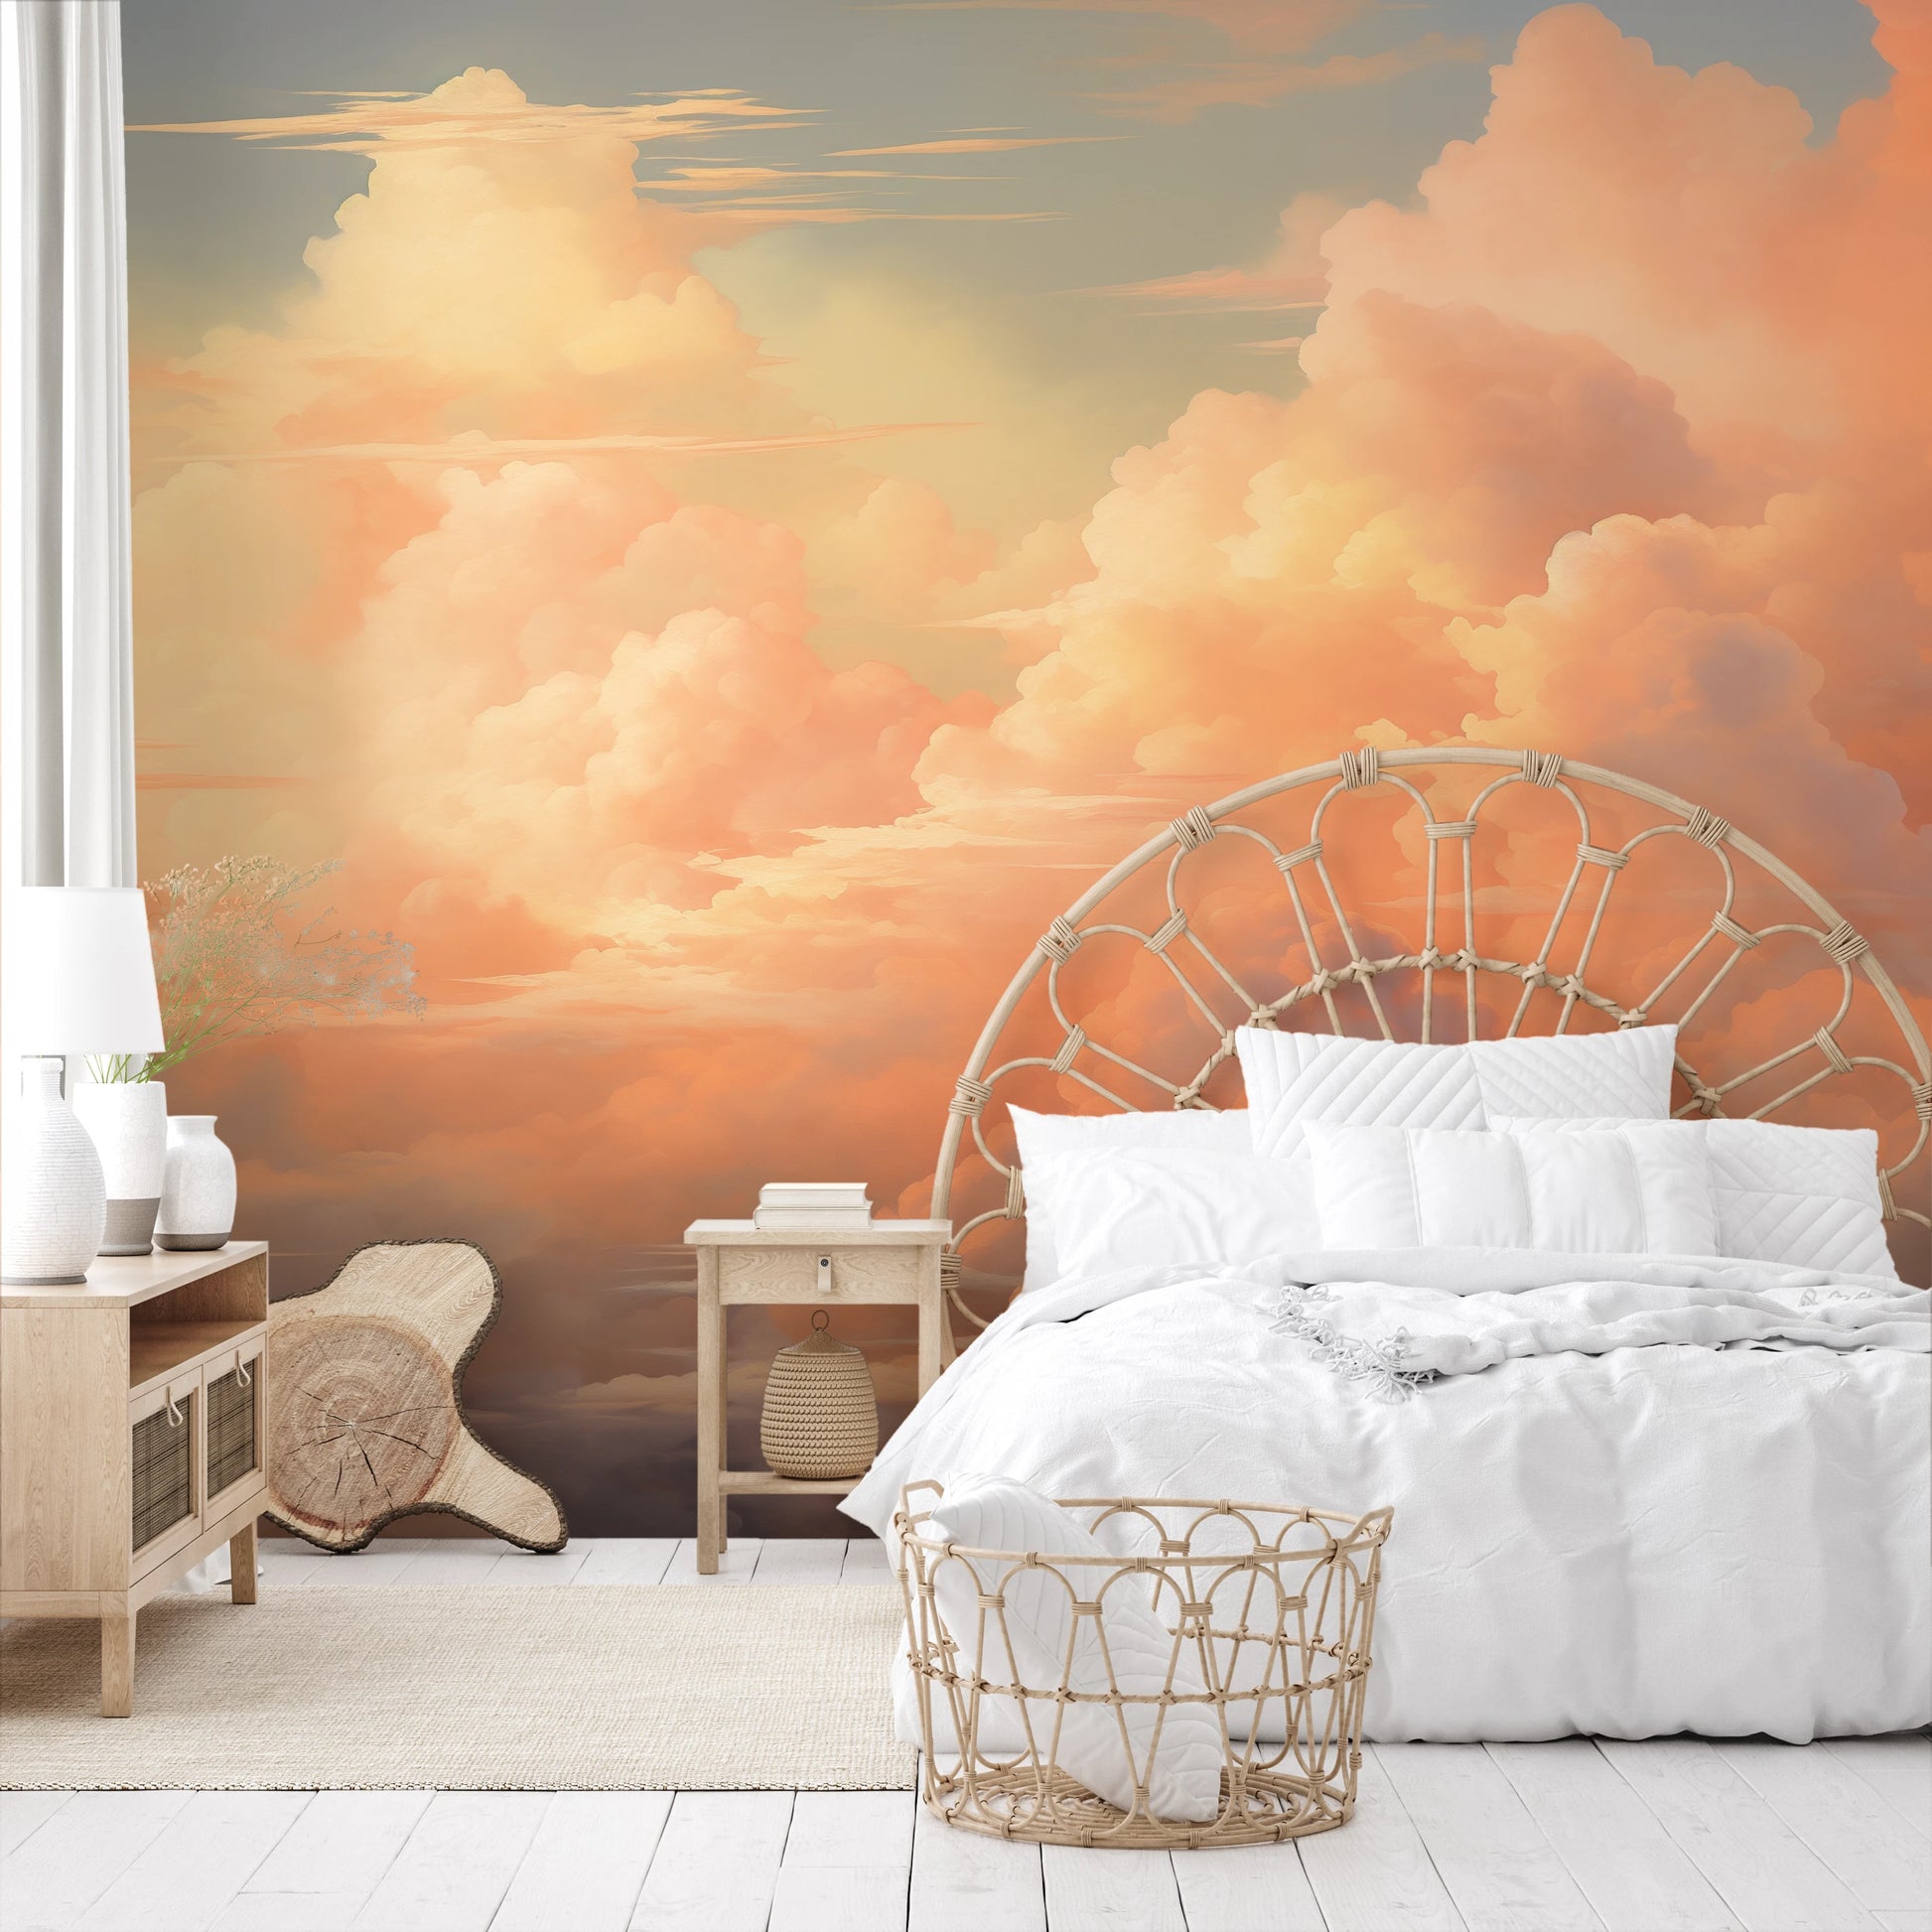 Fototapeta malowana o nazwie Sunset Serenity pokazana w aranżacji wnętrza.